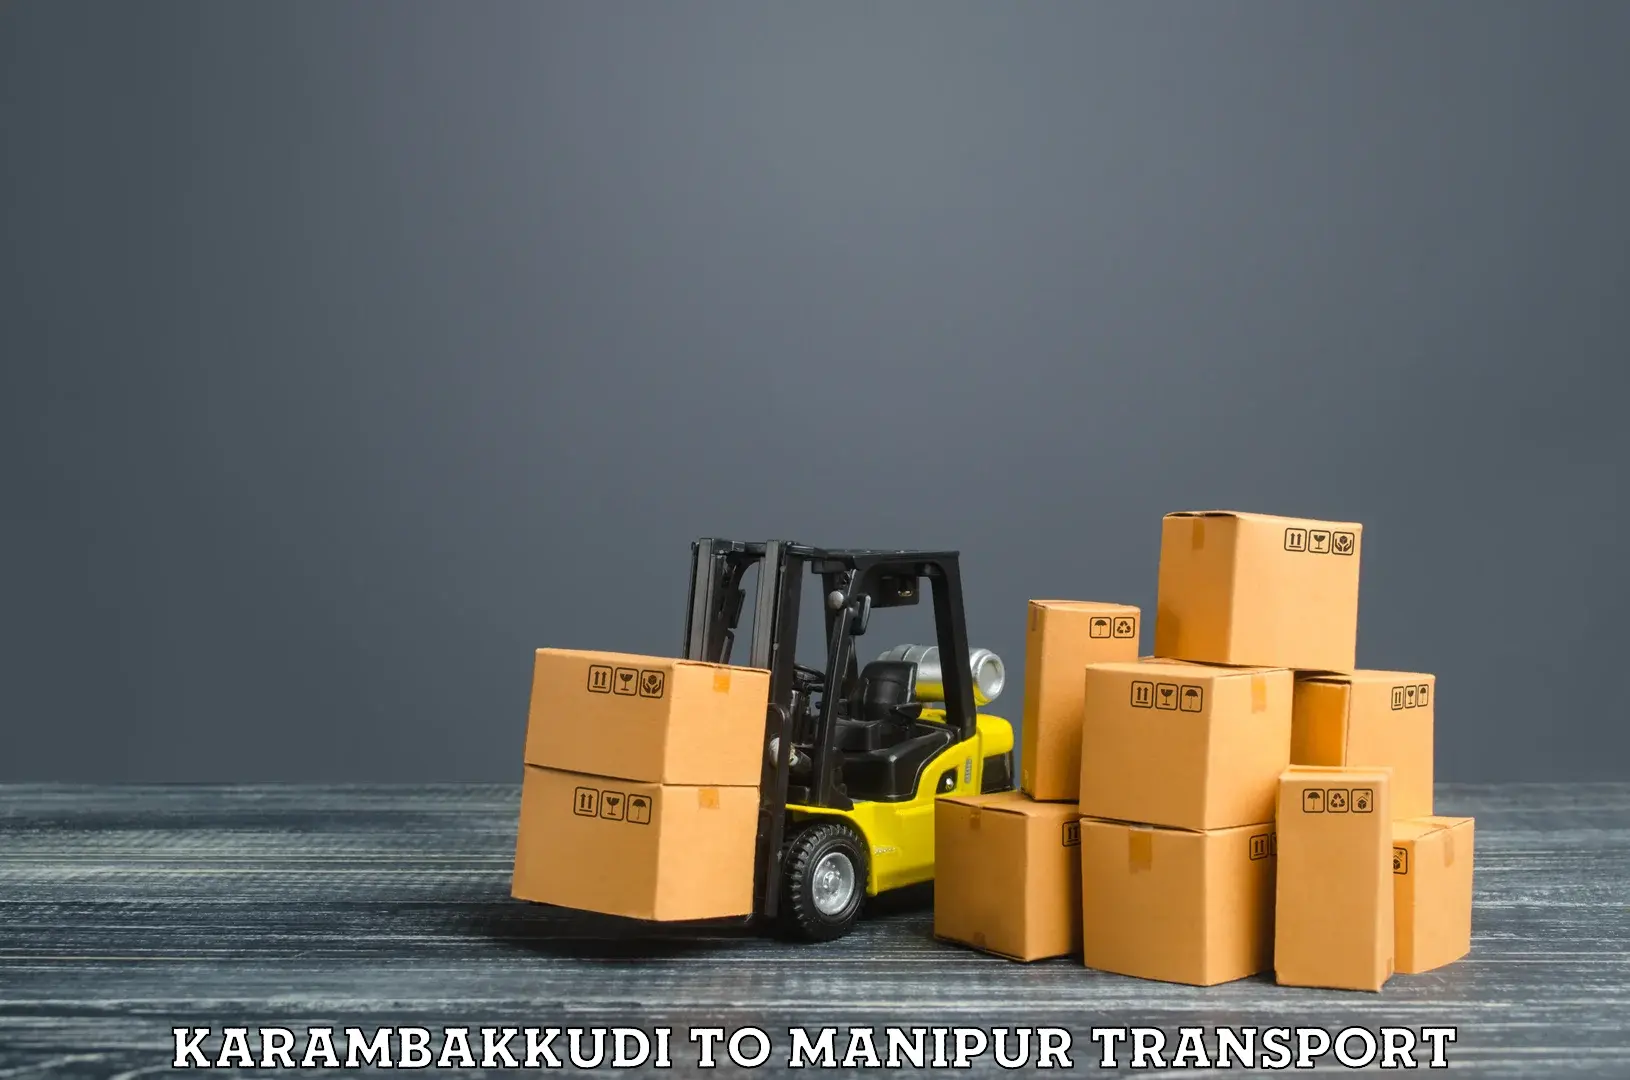 Part load transport service in India Karambakkudi to Moirang